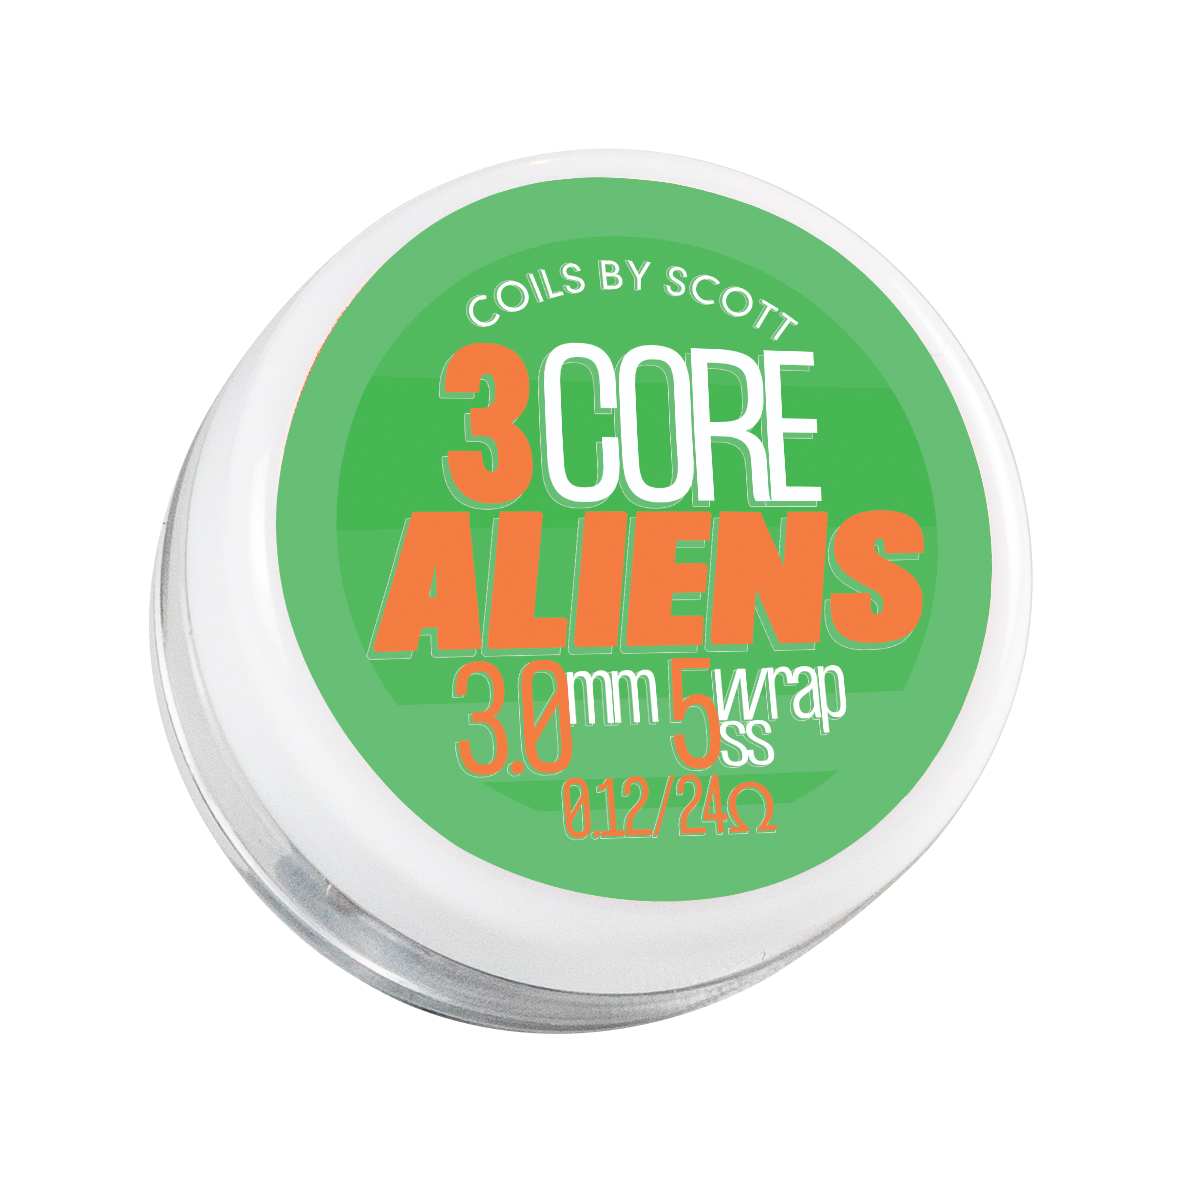 0.12 SS 3 Core Aliens